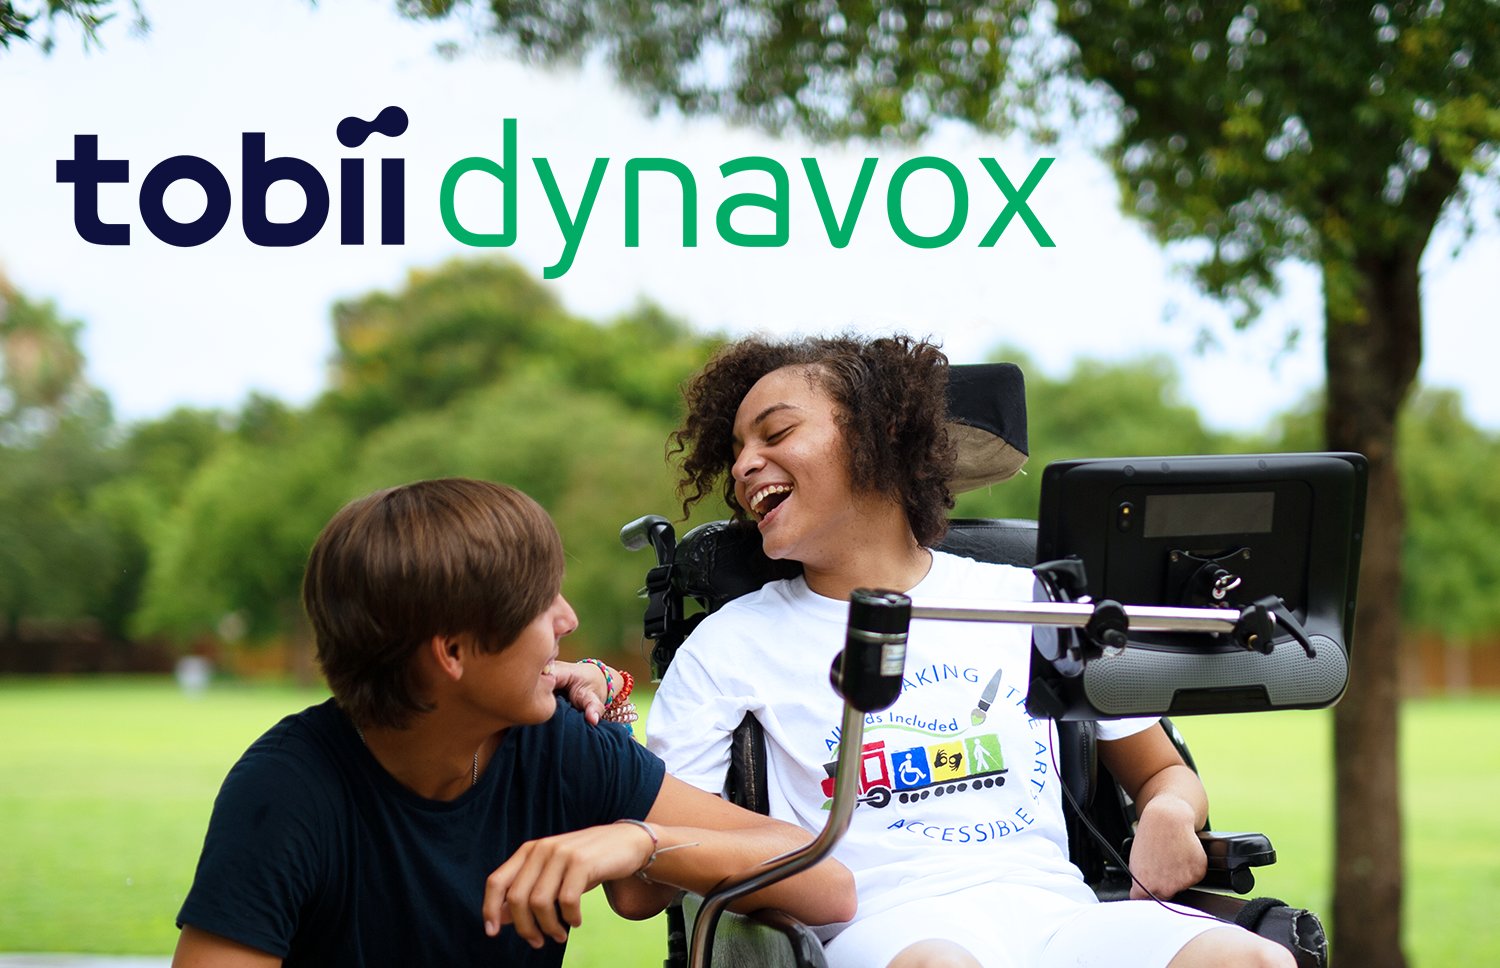 Tobii Dynavox assistive technology